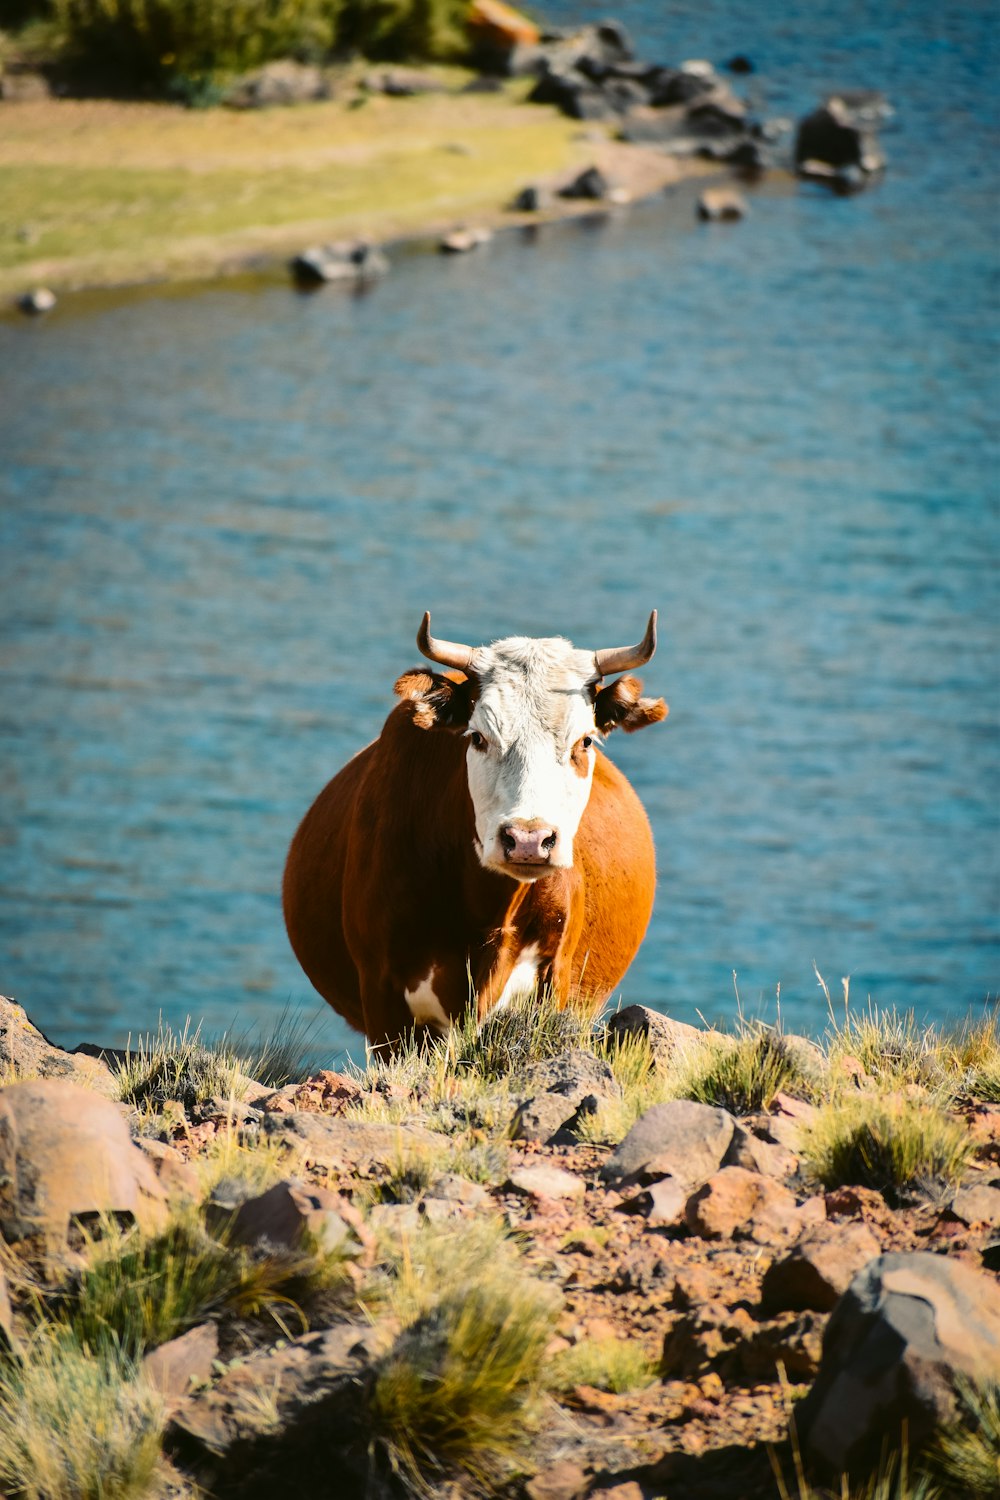 mucca marrone e bianca sul campo marrone vicino allo specchio d'acqua durante il giorno